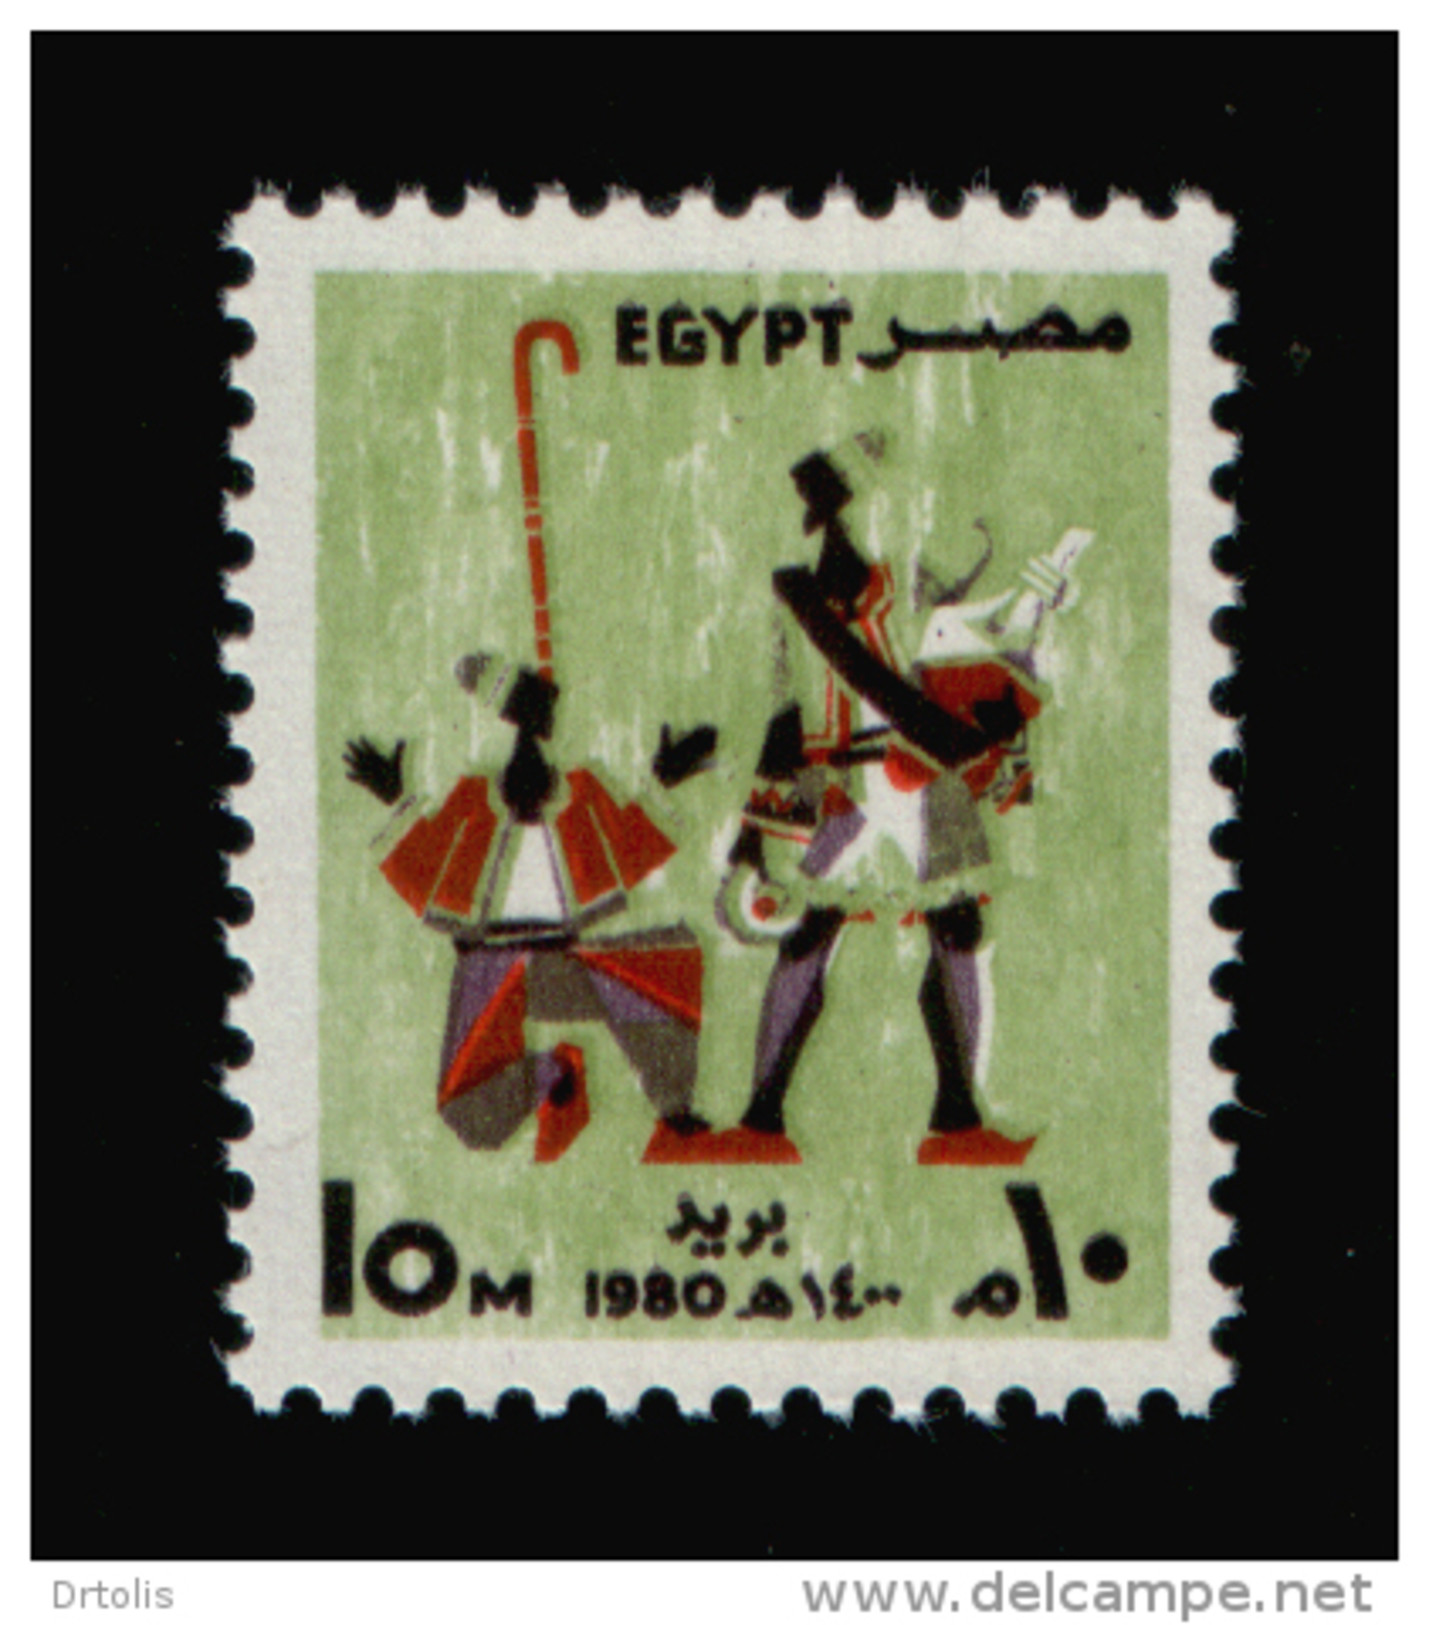 EGYPT / 1980 / FESTIVALS / ERKSOUS ( LICORICE ) SELLER / NAKRAZAN PLAYER / MNH / VF - Ongebruikt